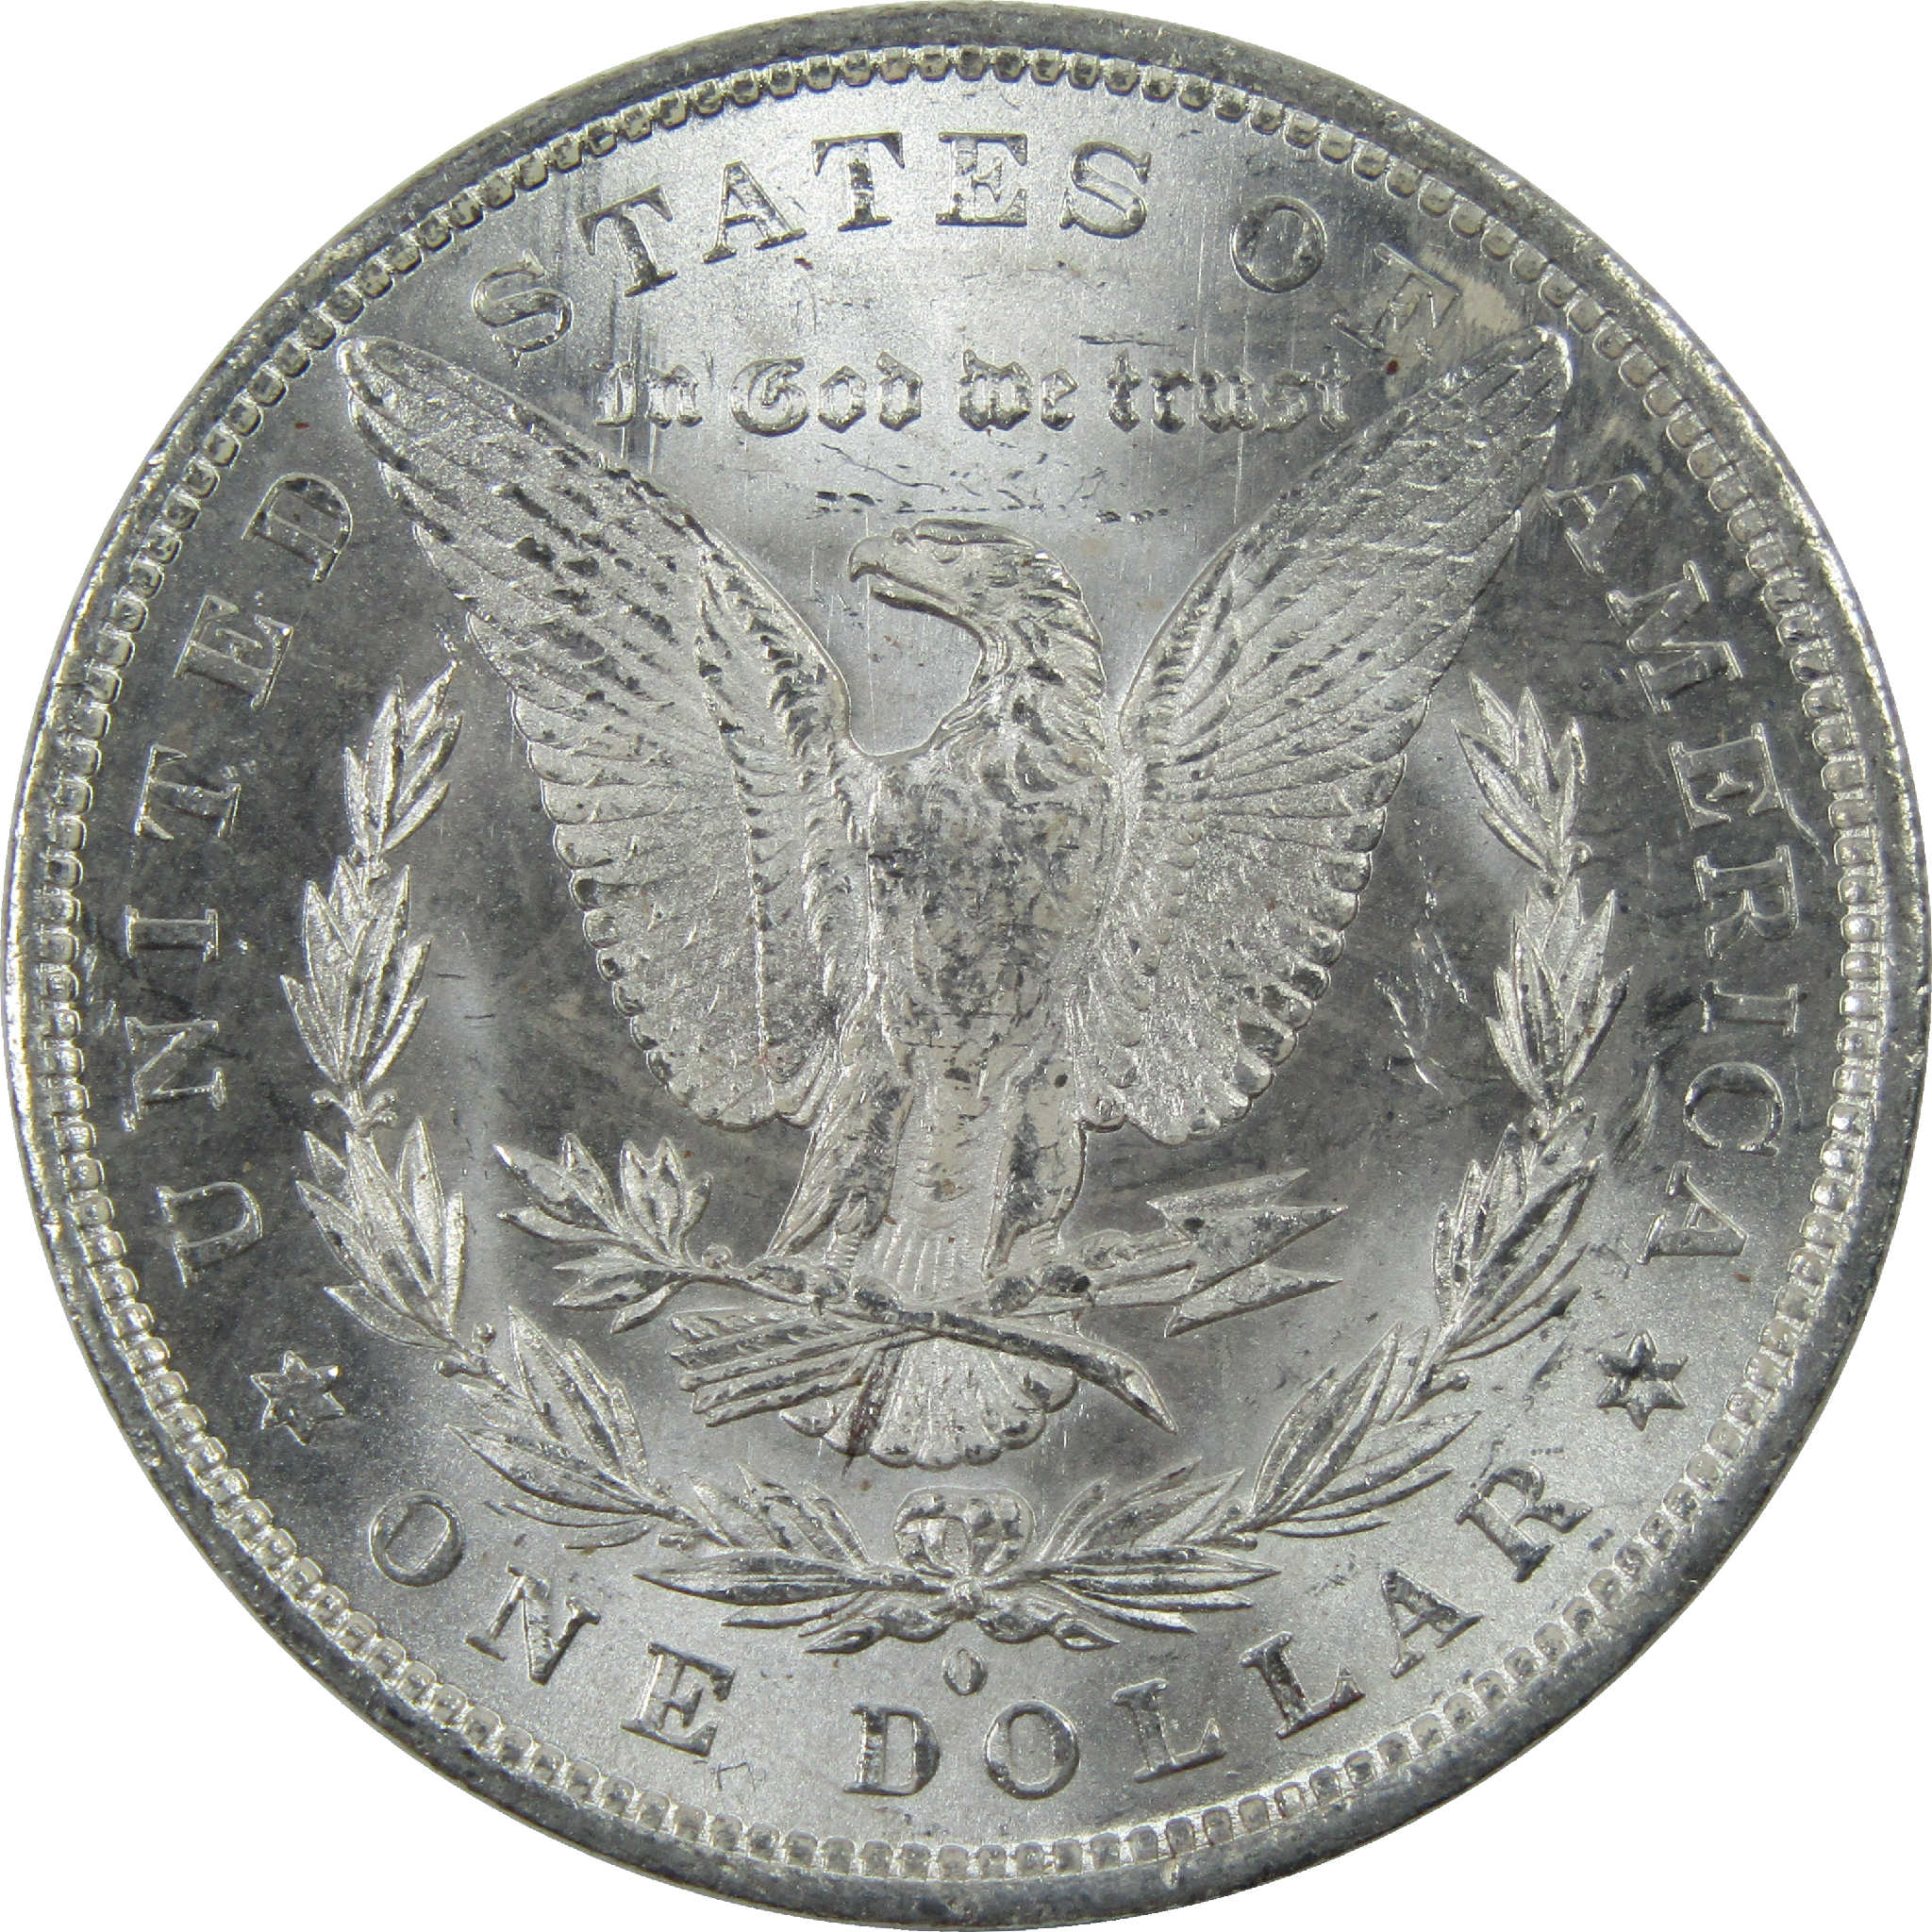 1883 O Morgan Dollar Uncirculated Silver $1 Coin SKU:I11806 - Morgan coin - Morgan silver dollar - Morgan silver dollar for sale - Profile Coins &amp; Collectibles